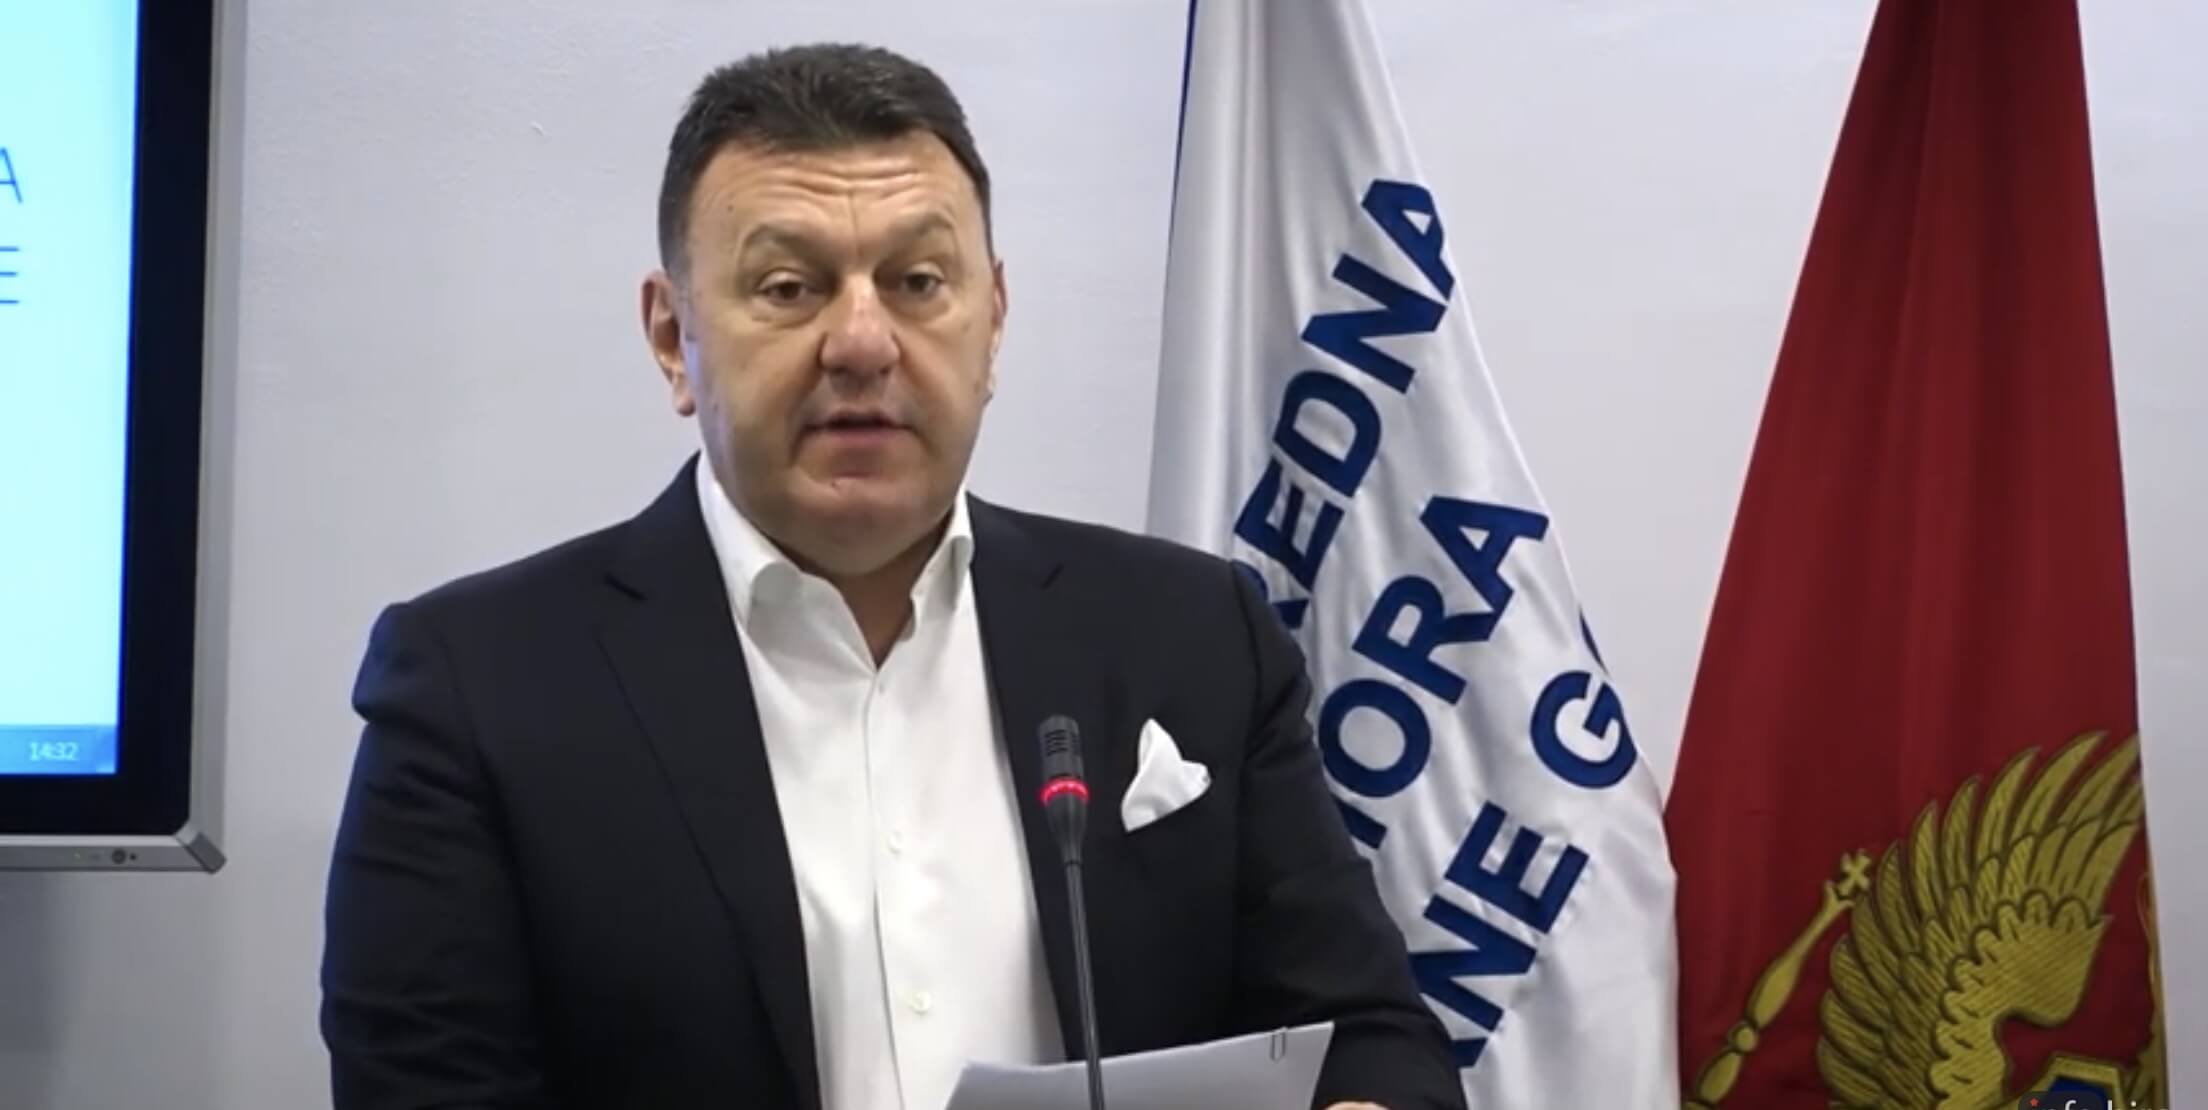 Bokan: Voli i “Goranović” mogu pokriti tržište mesa 60% i smanjiti uvoz